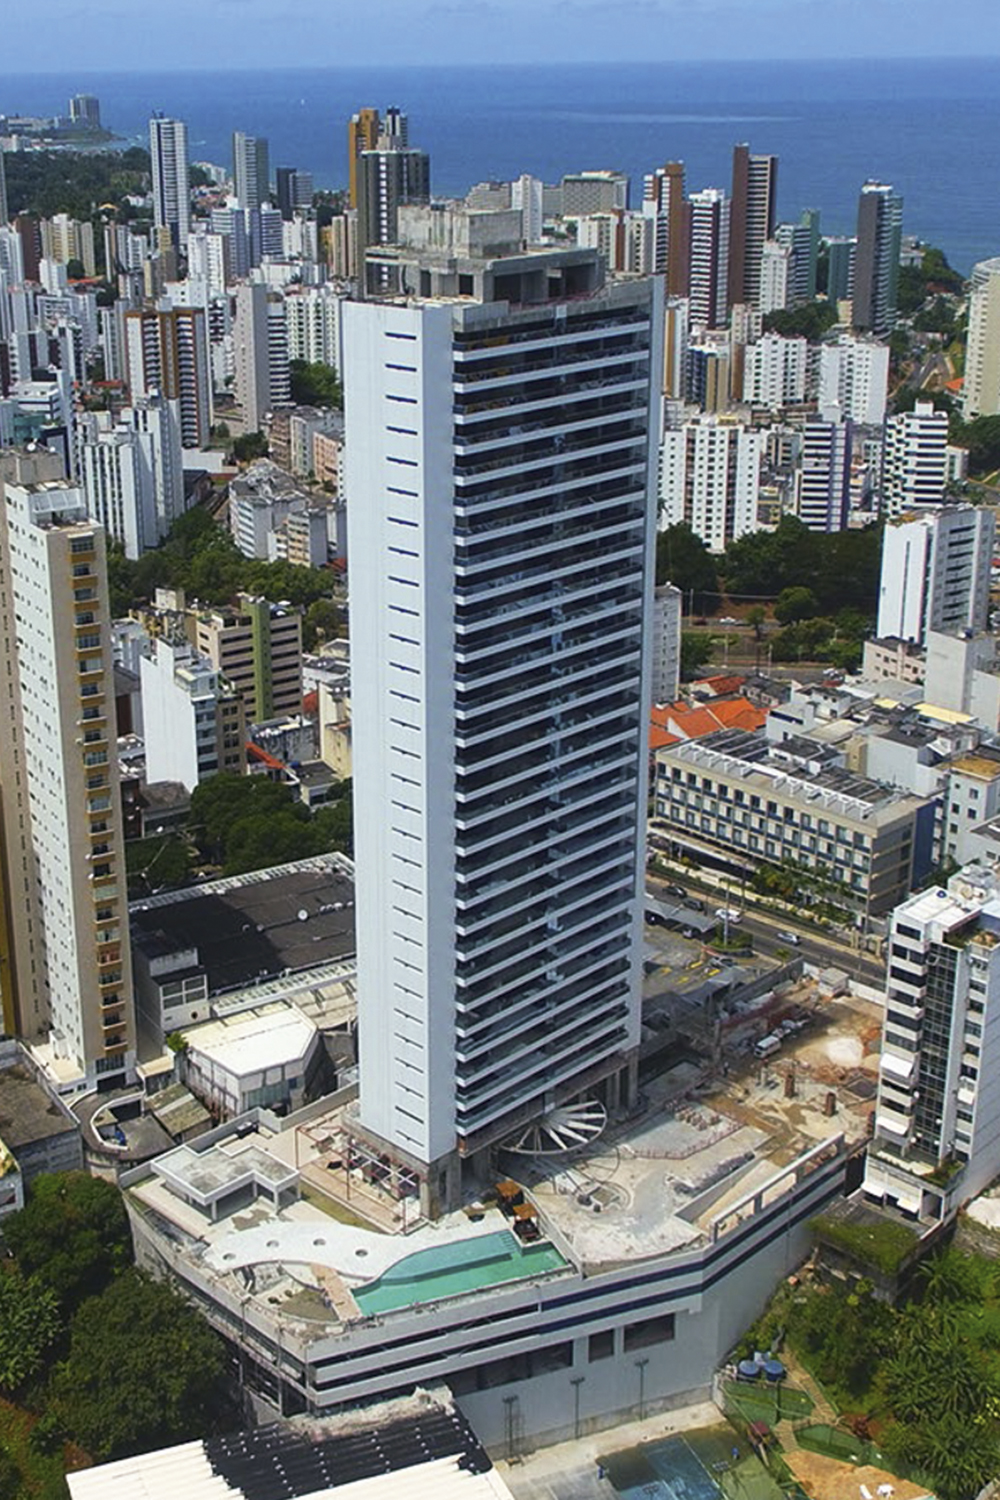 LAR, DOCE LAR - Edifício Mansão Bahiano: construtora local recebeu decisão favorável do governo de Costa -